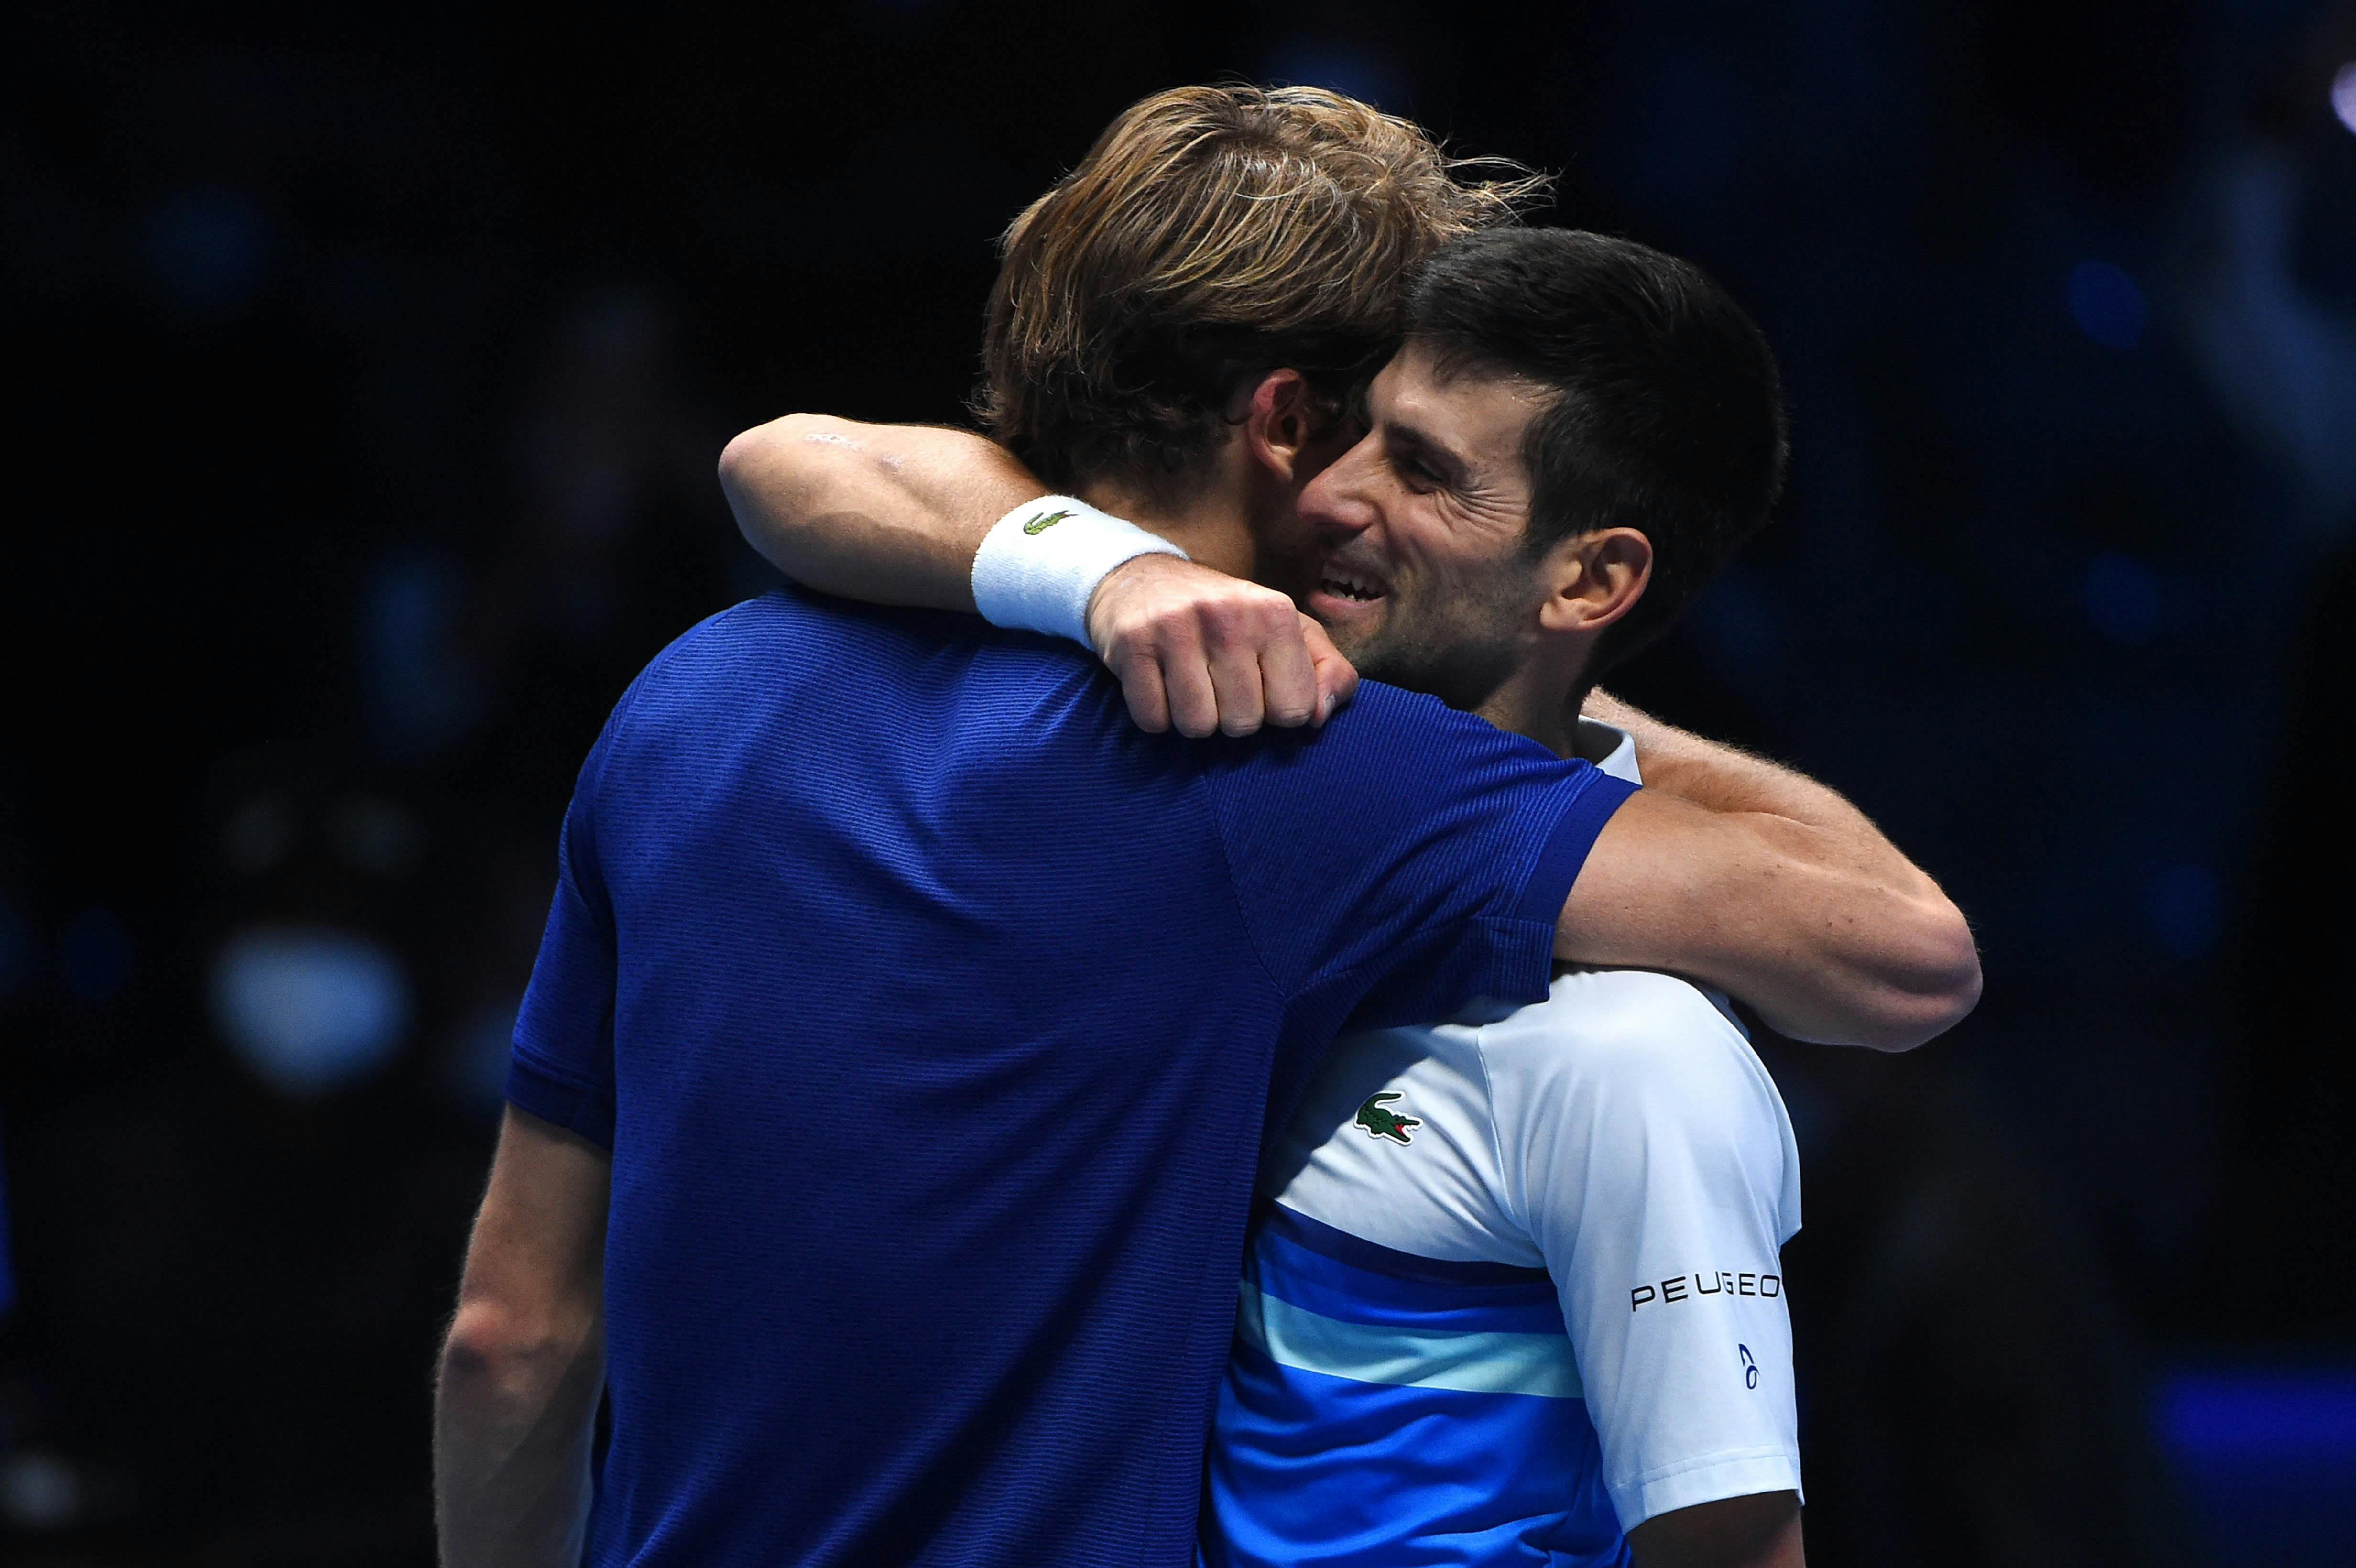 Nice hug between Alexander Zverev and Novak Djokovic at the 2021 ATP Finals